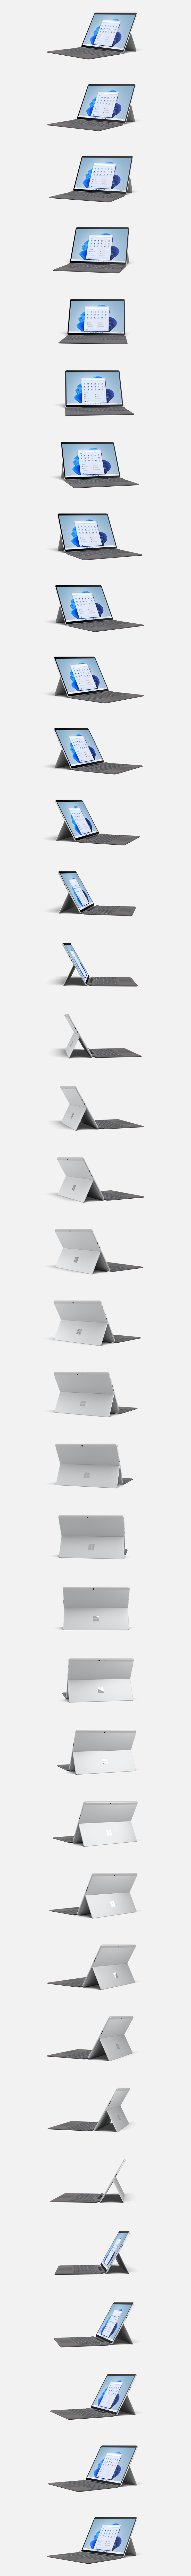 Surface Pro X til erhverv.